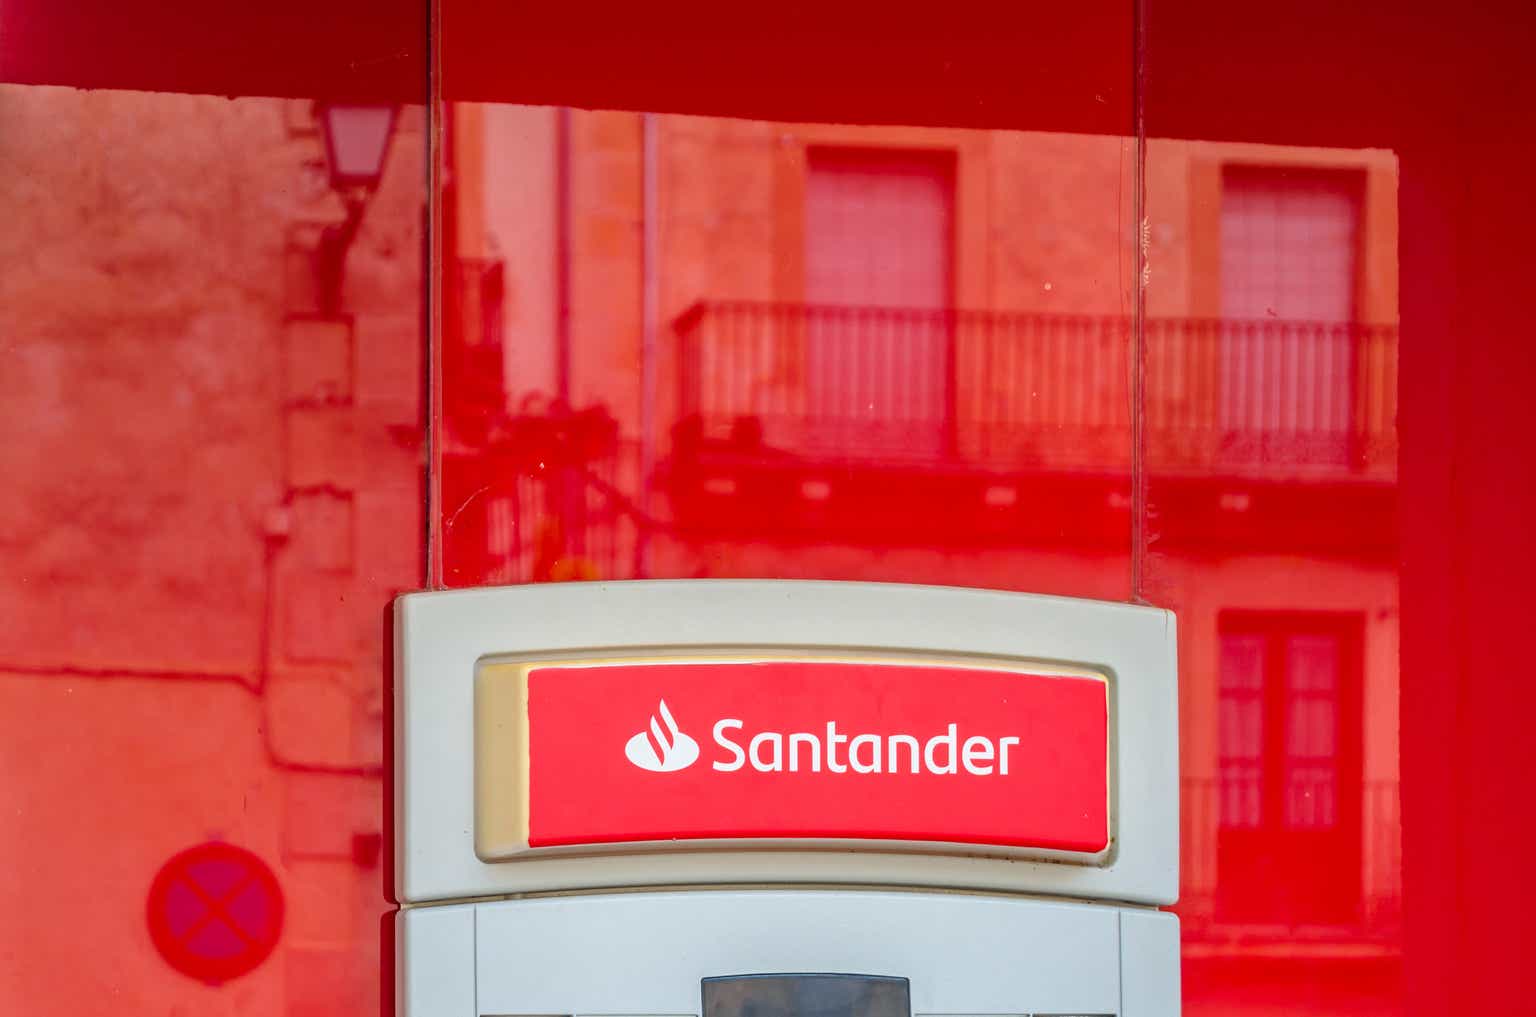 Banco Santander Strong Liquidity Position Trading At Just 55x Earnings Nysesan Seeking Alpha 9608